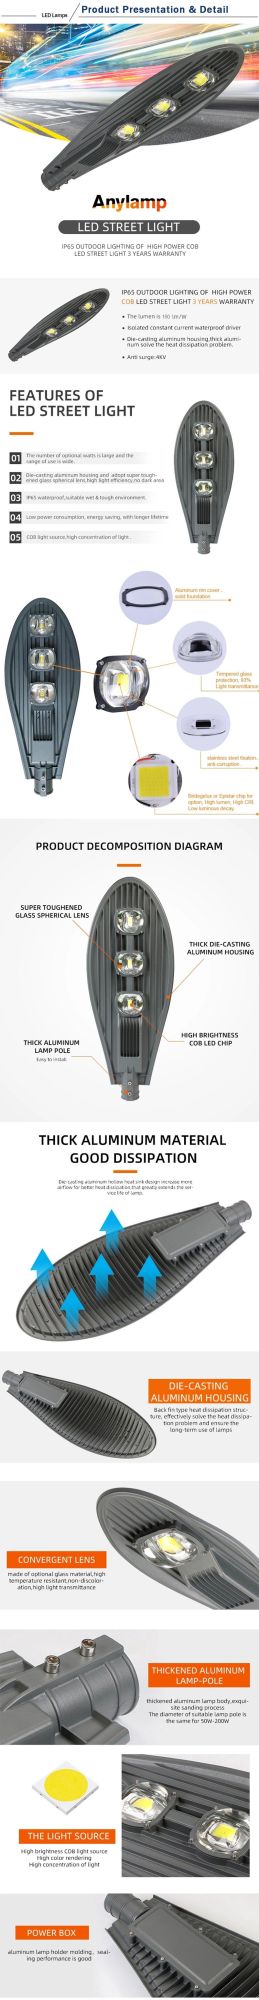 COB Head Most Popular LED Street Lamp 60W LED Road Light